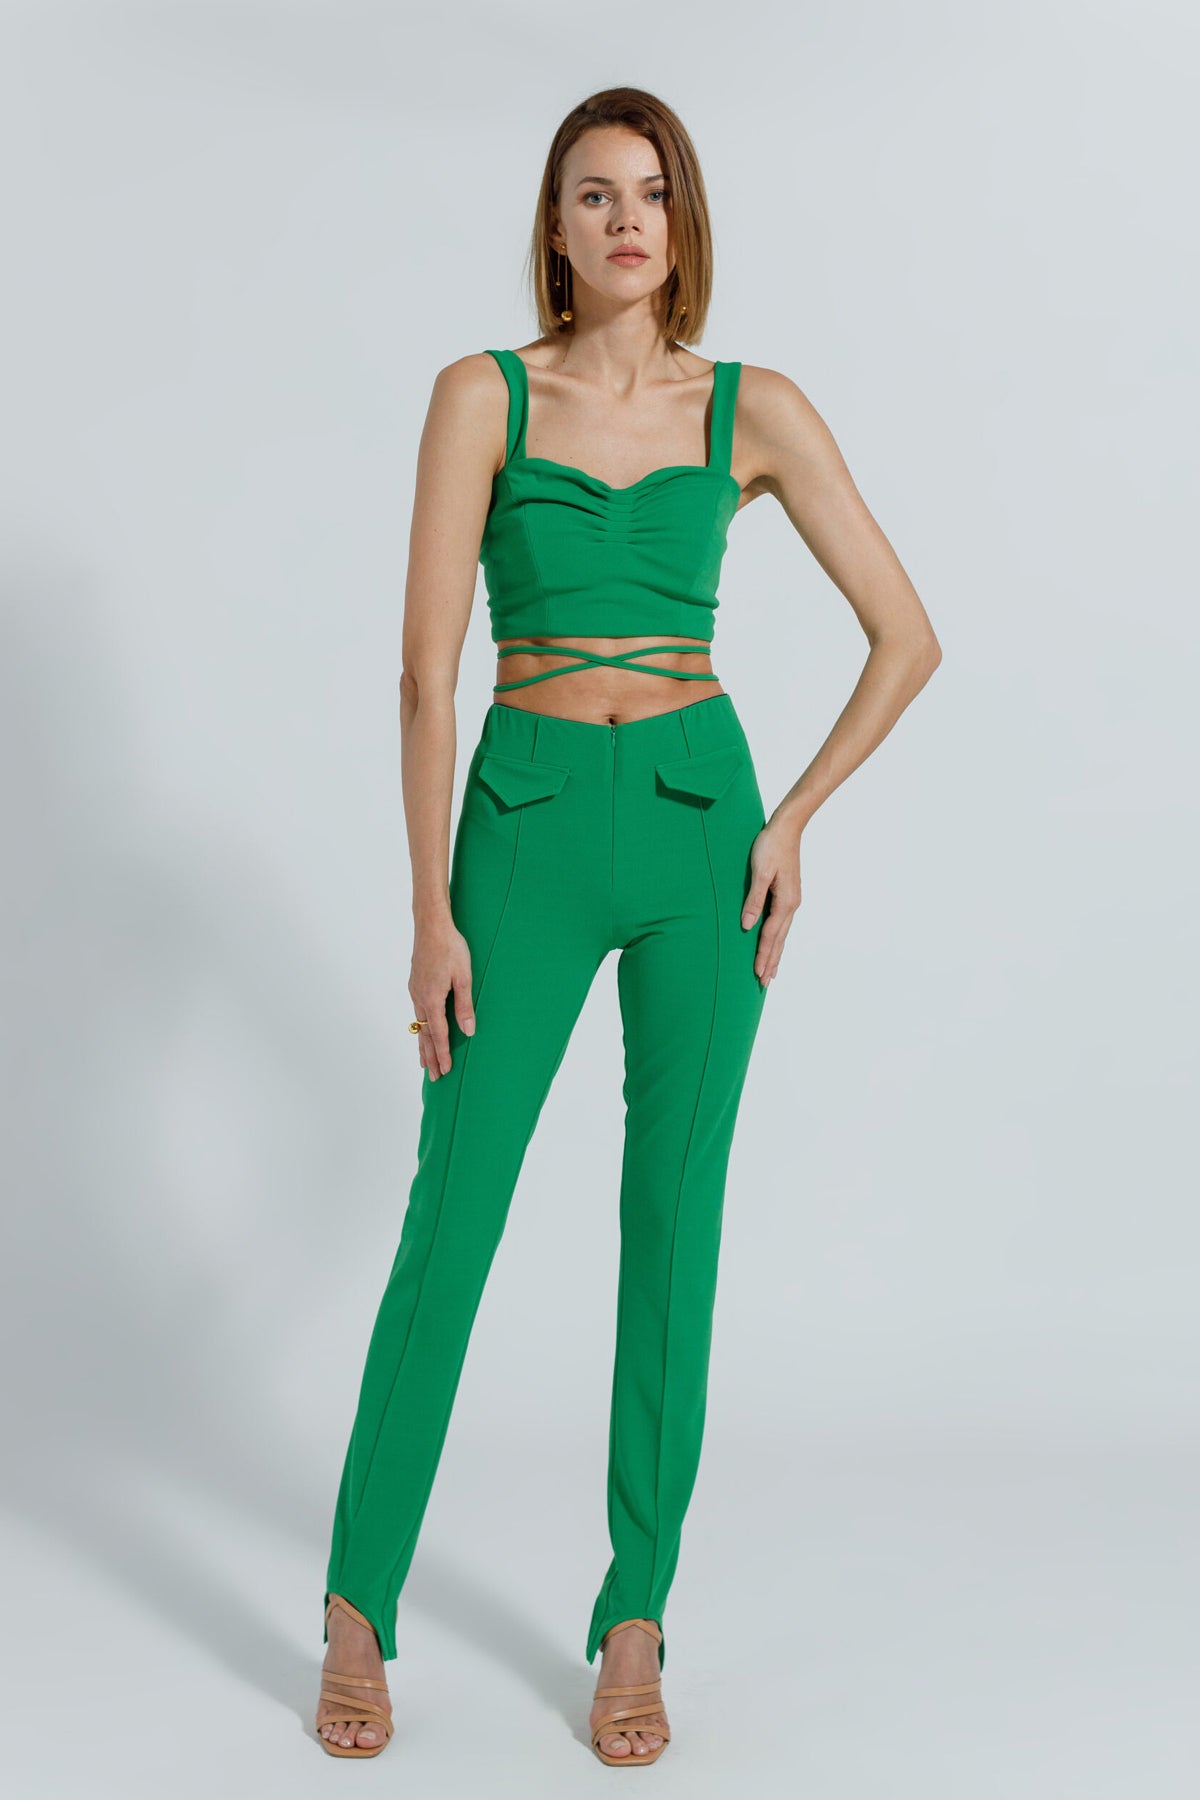 Pantalon verde Energy Confident Concept Store